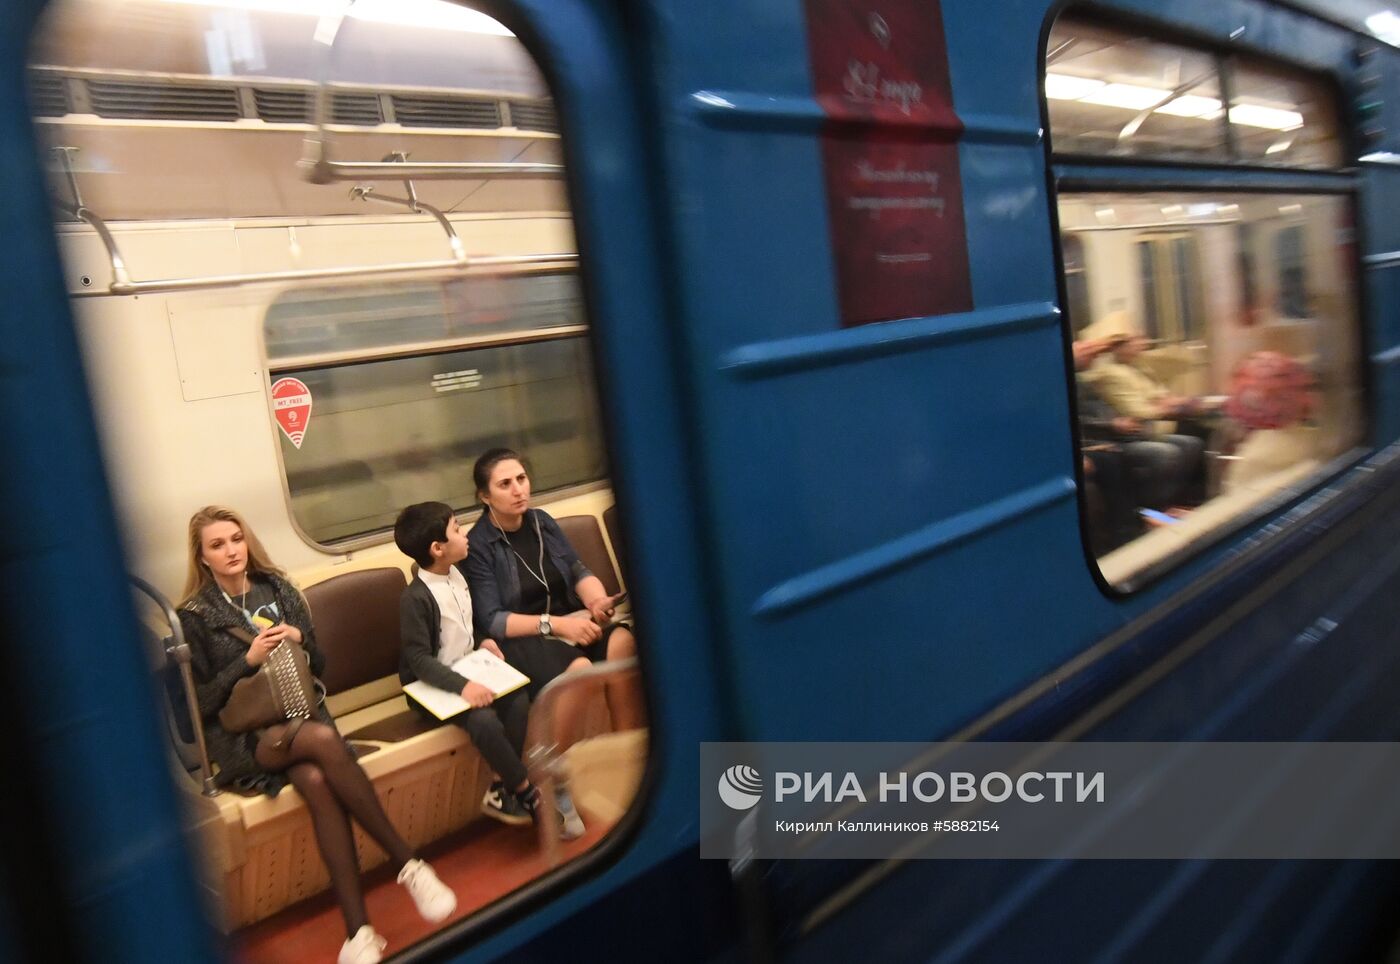 Парад поездов Московского метро